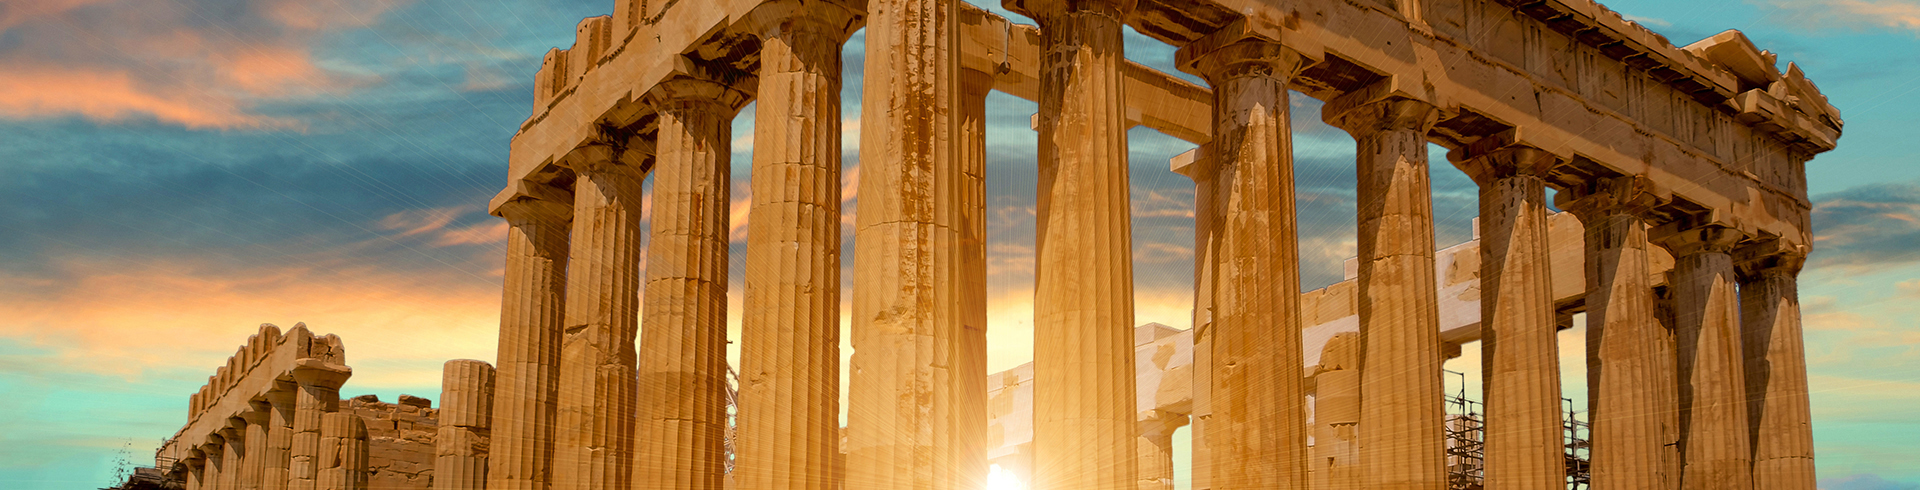 Coucher de soleil sur le Parthenon à Athènes